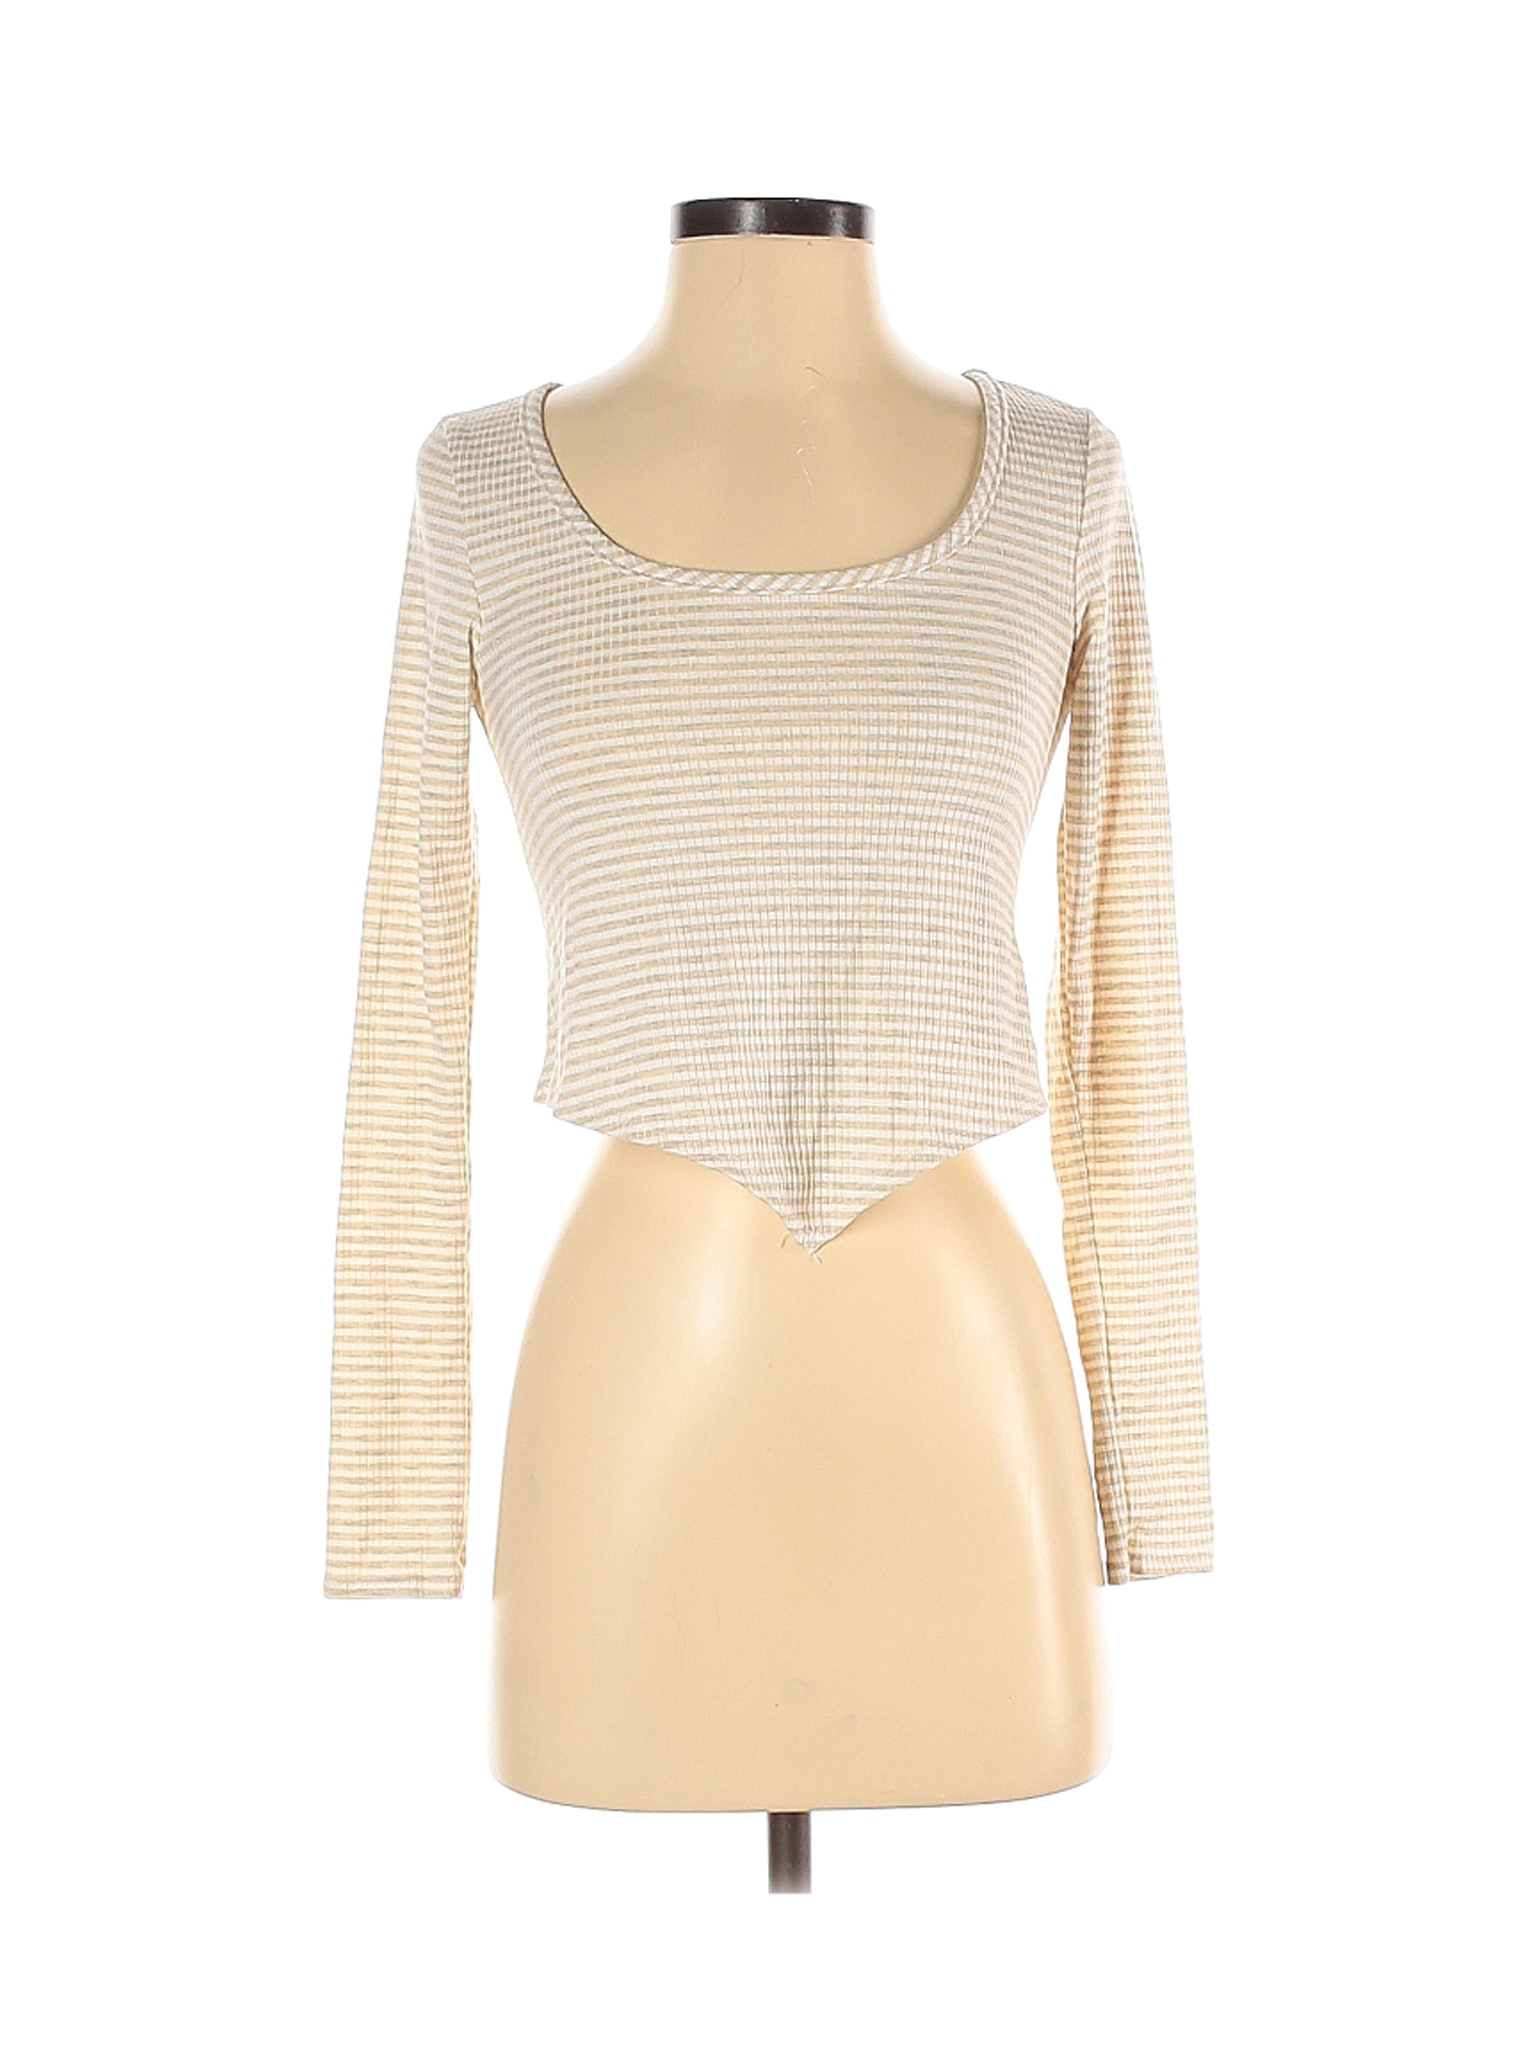 Olivia Rae Women Brown Long Sleeve Top S | eBay